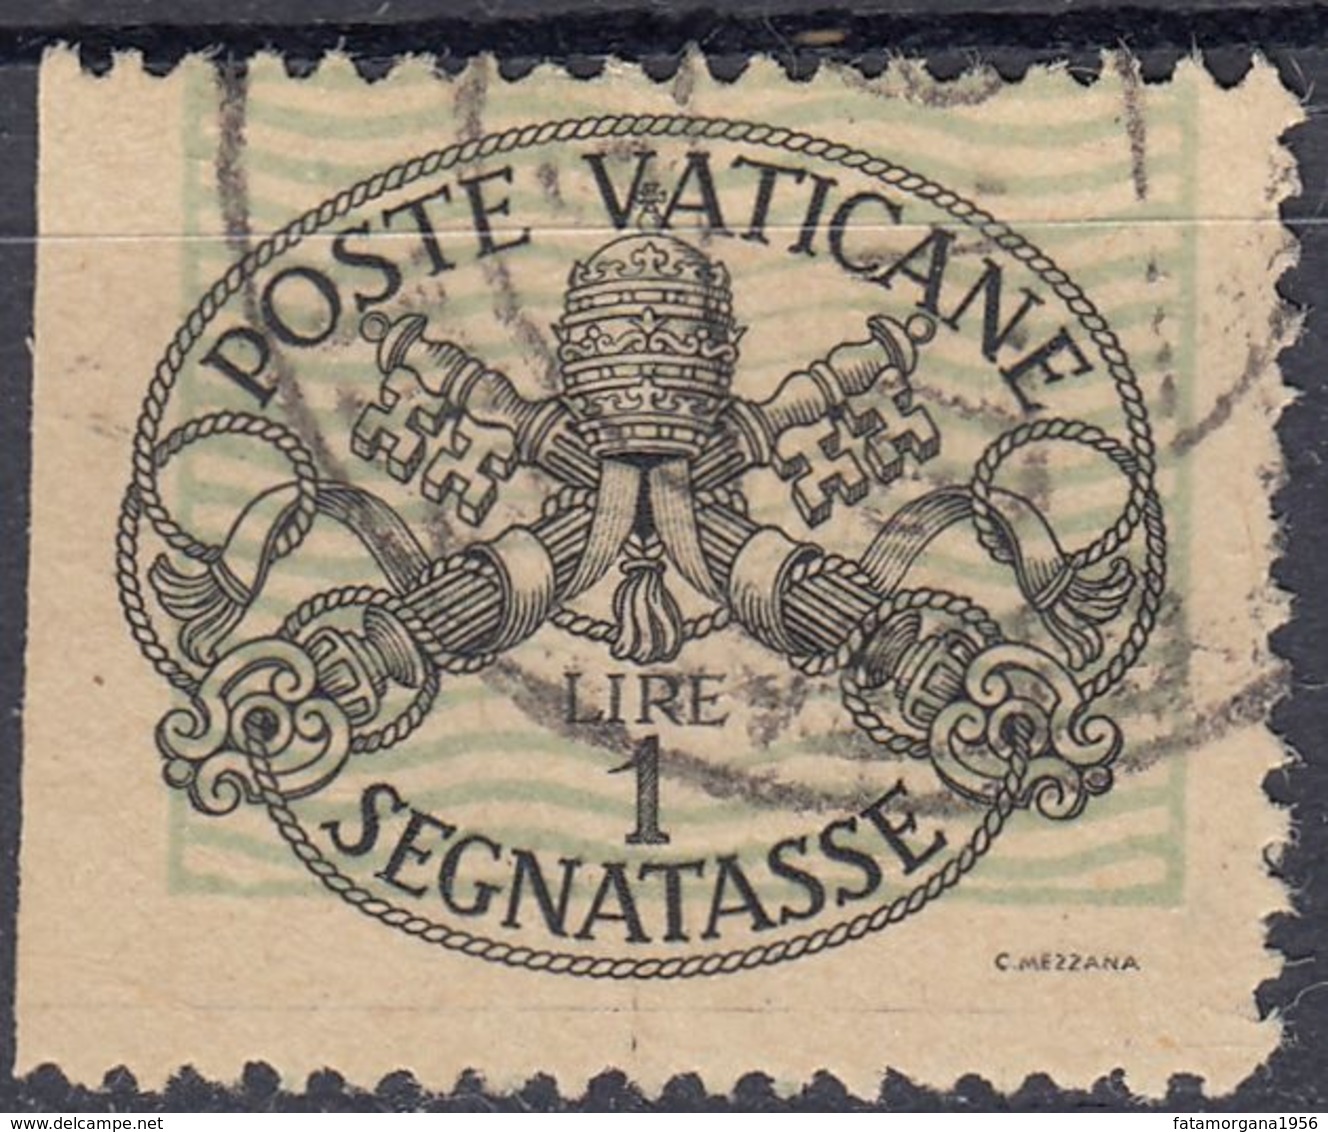 VATICANO - 1945 - Segnatasse Yvert 10a, Varietà Non Dentellata Su Un Lato, Come Da Immagine. - Postage Due